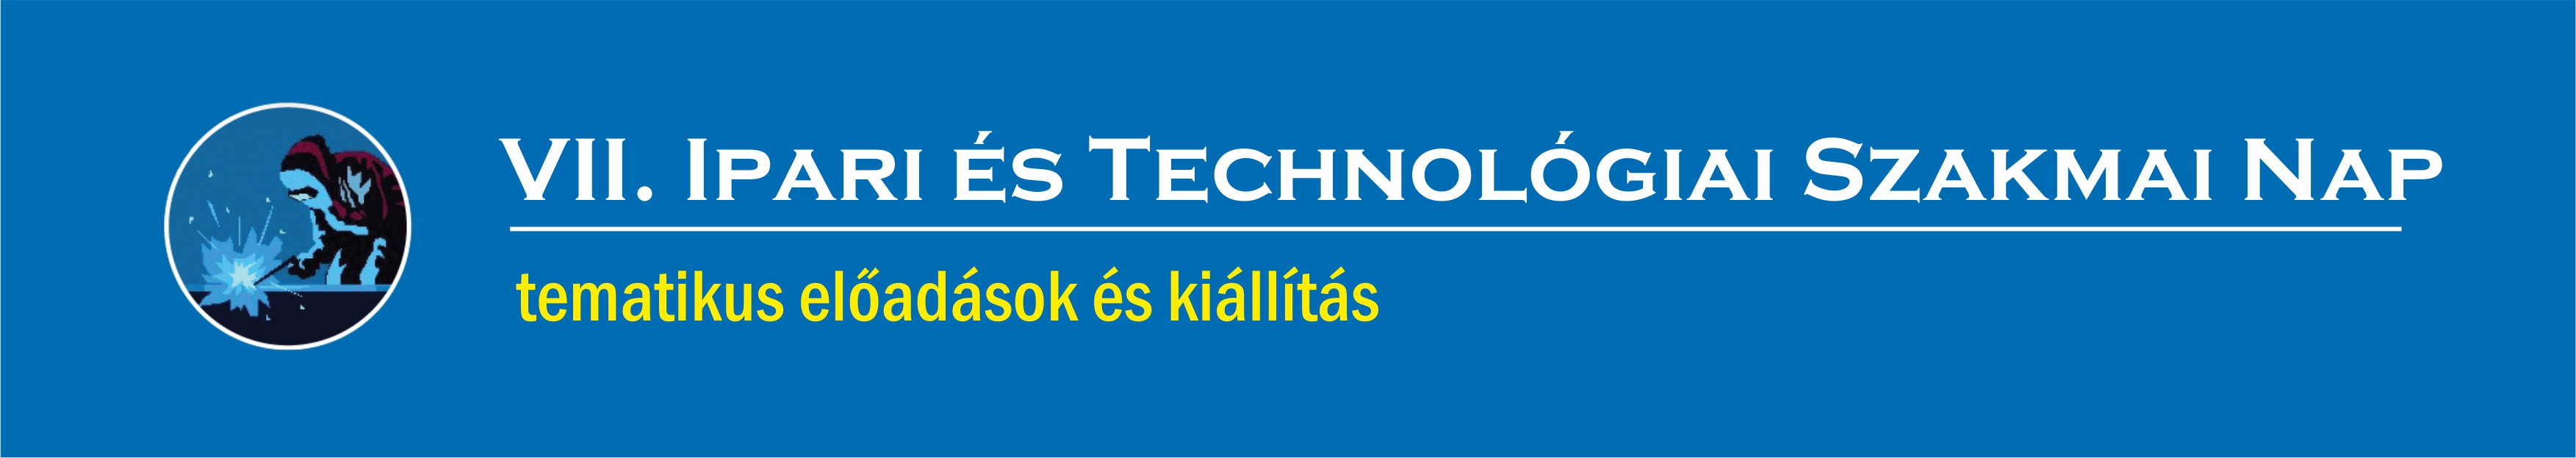 VII. ipari és technológiai szakmai nap logo